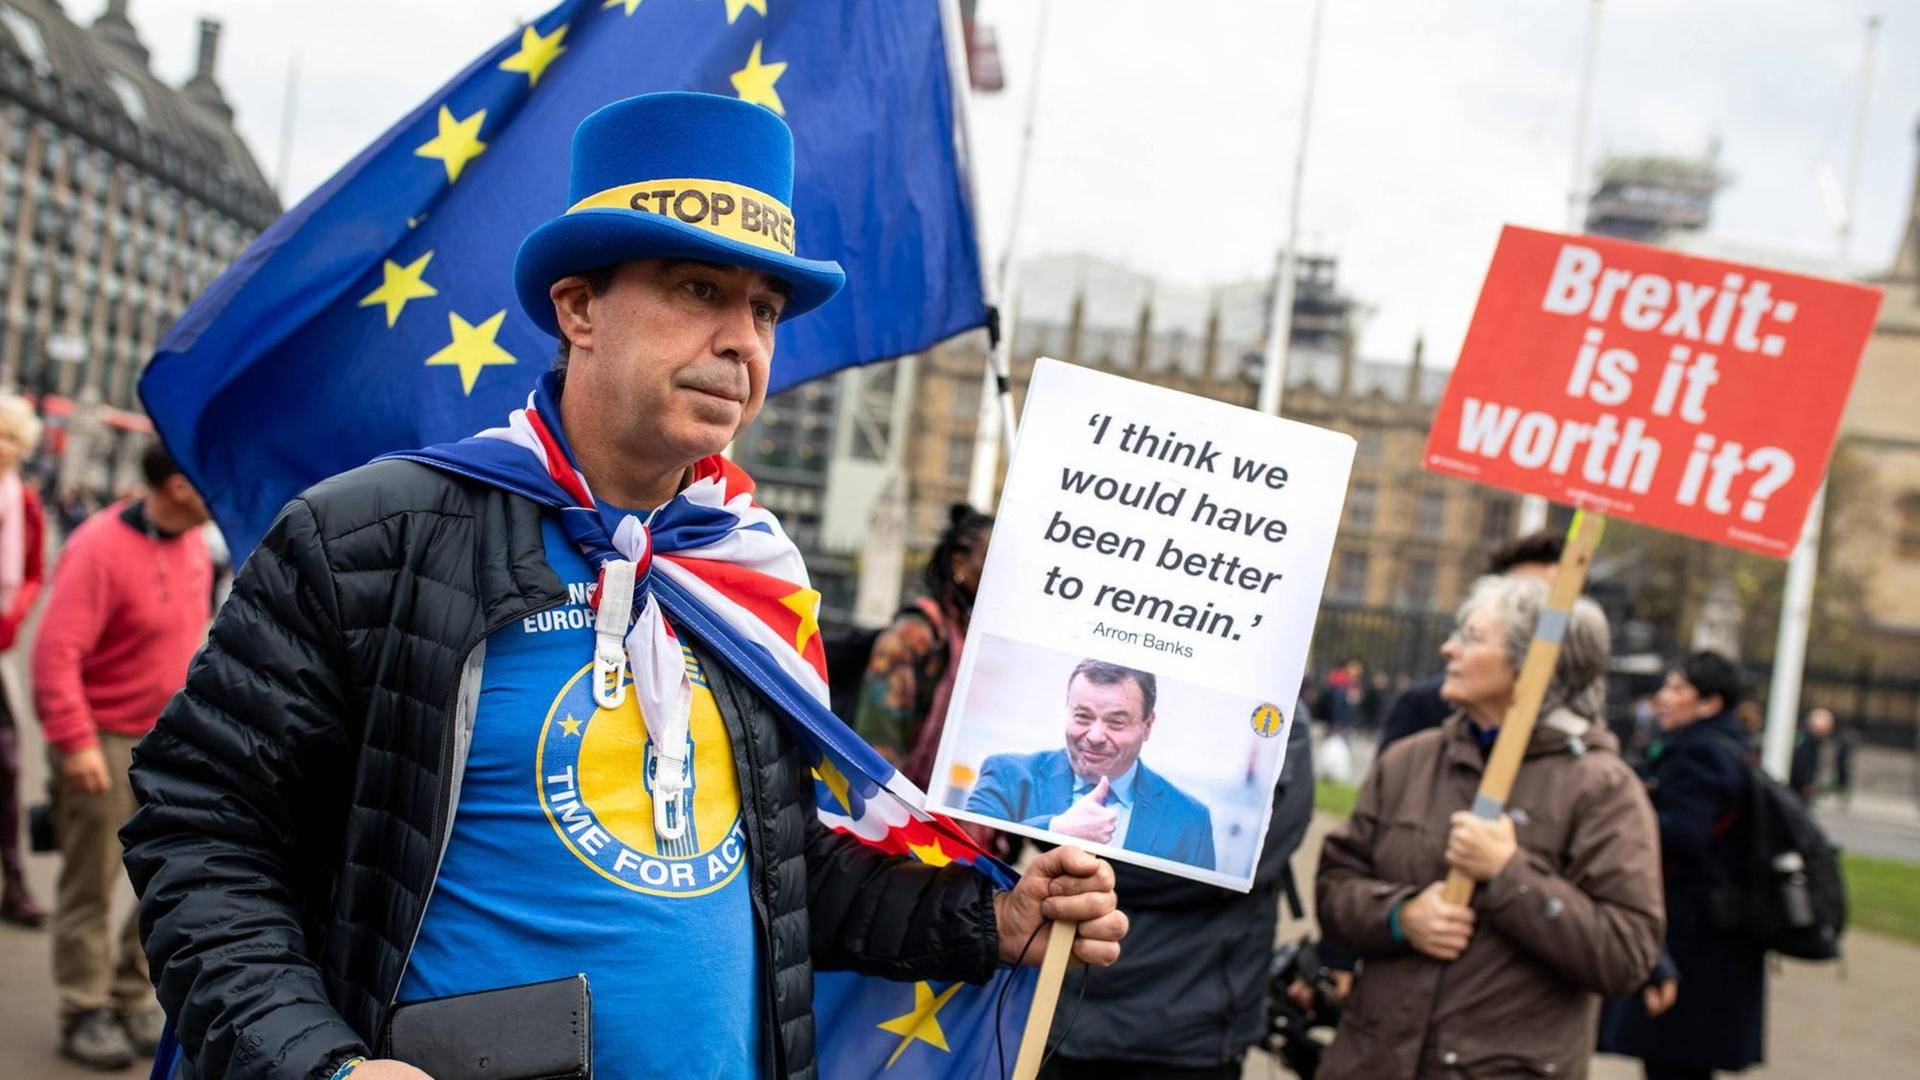 Ein Mann demonstriert mit anderen Brexit-Gegnern auf dem Londoner Parliament Square. Er trägt einen blauen Zylinder mit der Aufschrift: "Stop Brexit". Außerdem hält er ein Plakat mit einem Zitat von Arron Banks hoch: "I think we would have been better to remain." Im Hintergrund ist eine Frau zu sehen, die ein Plakat mit der Aufschrift hochhält: "Brexit: is it worth it?"